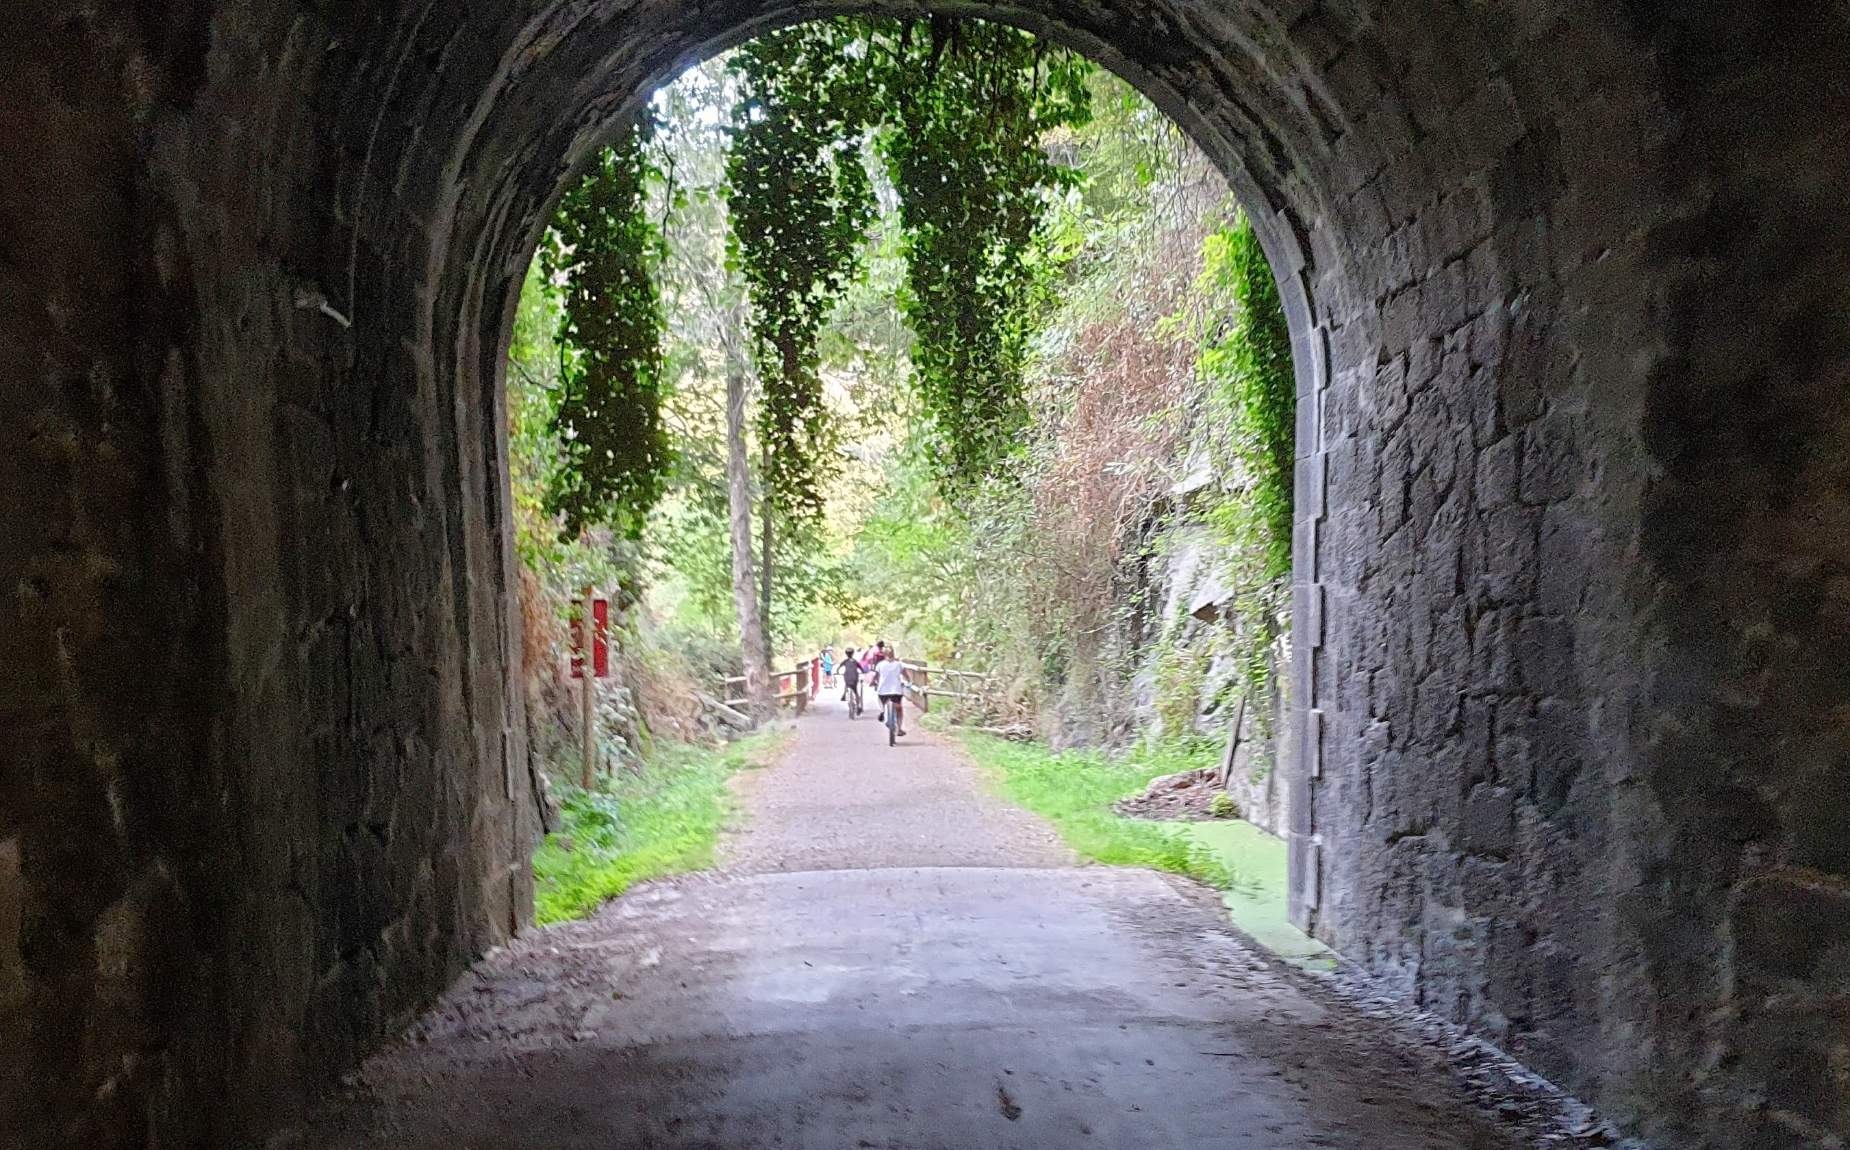 Tunel por debajo de una monta&ntilde;a con varios ni&ntilde;os en bicicleta